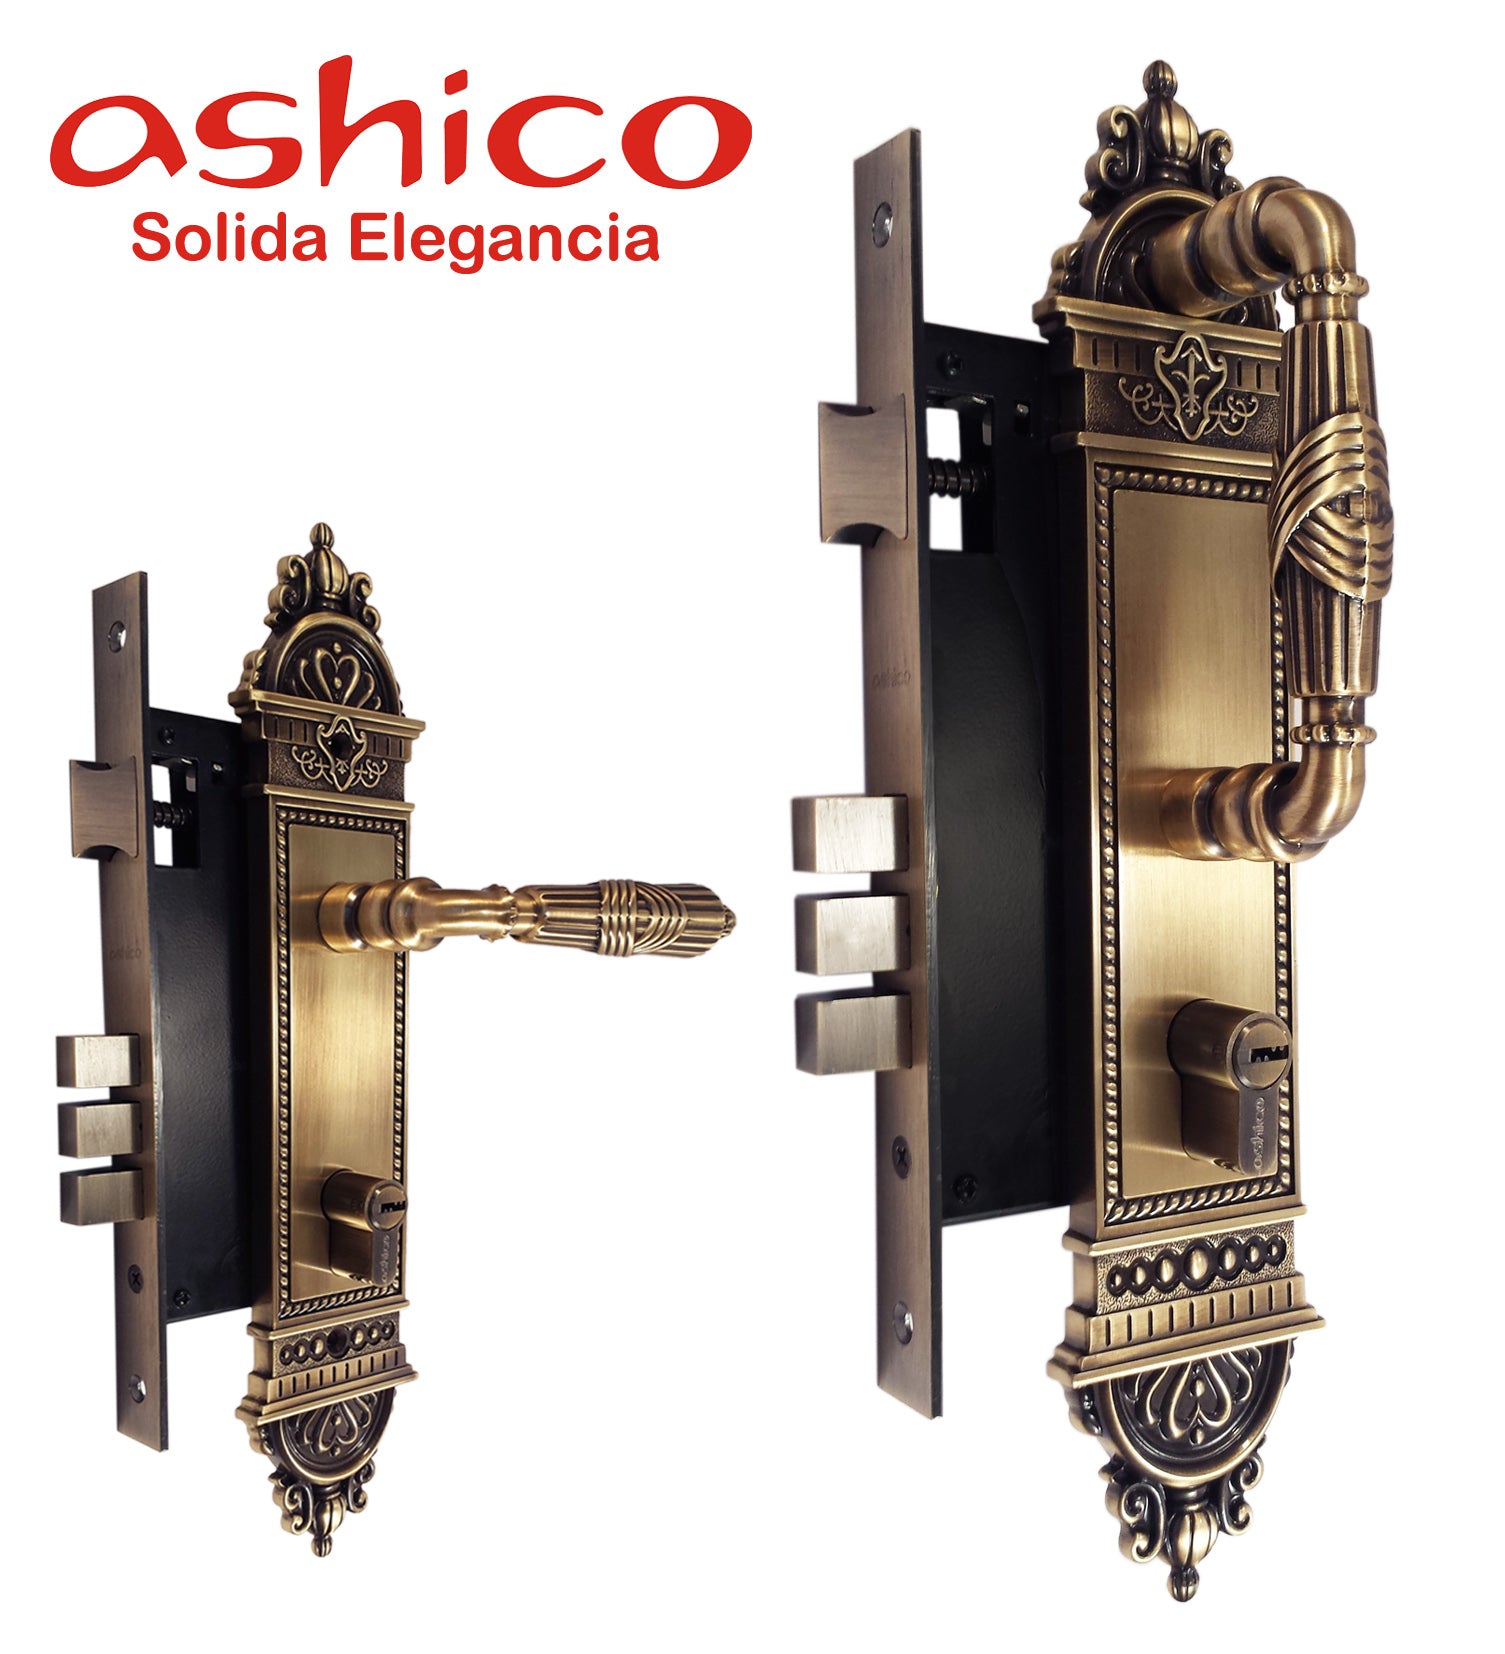 Cerradura de puerta principal modelo Ashico Atlantis Jaladera/Manija  Chapa para puerta de entrada modelo Ashico Atlantis Jaladera/Manija 